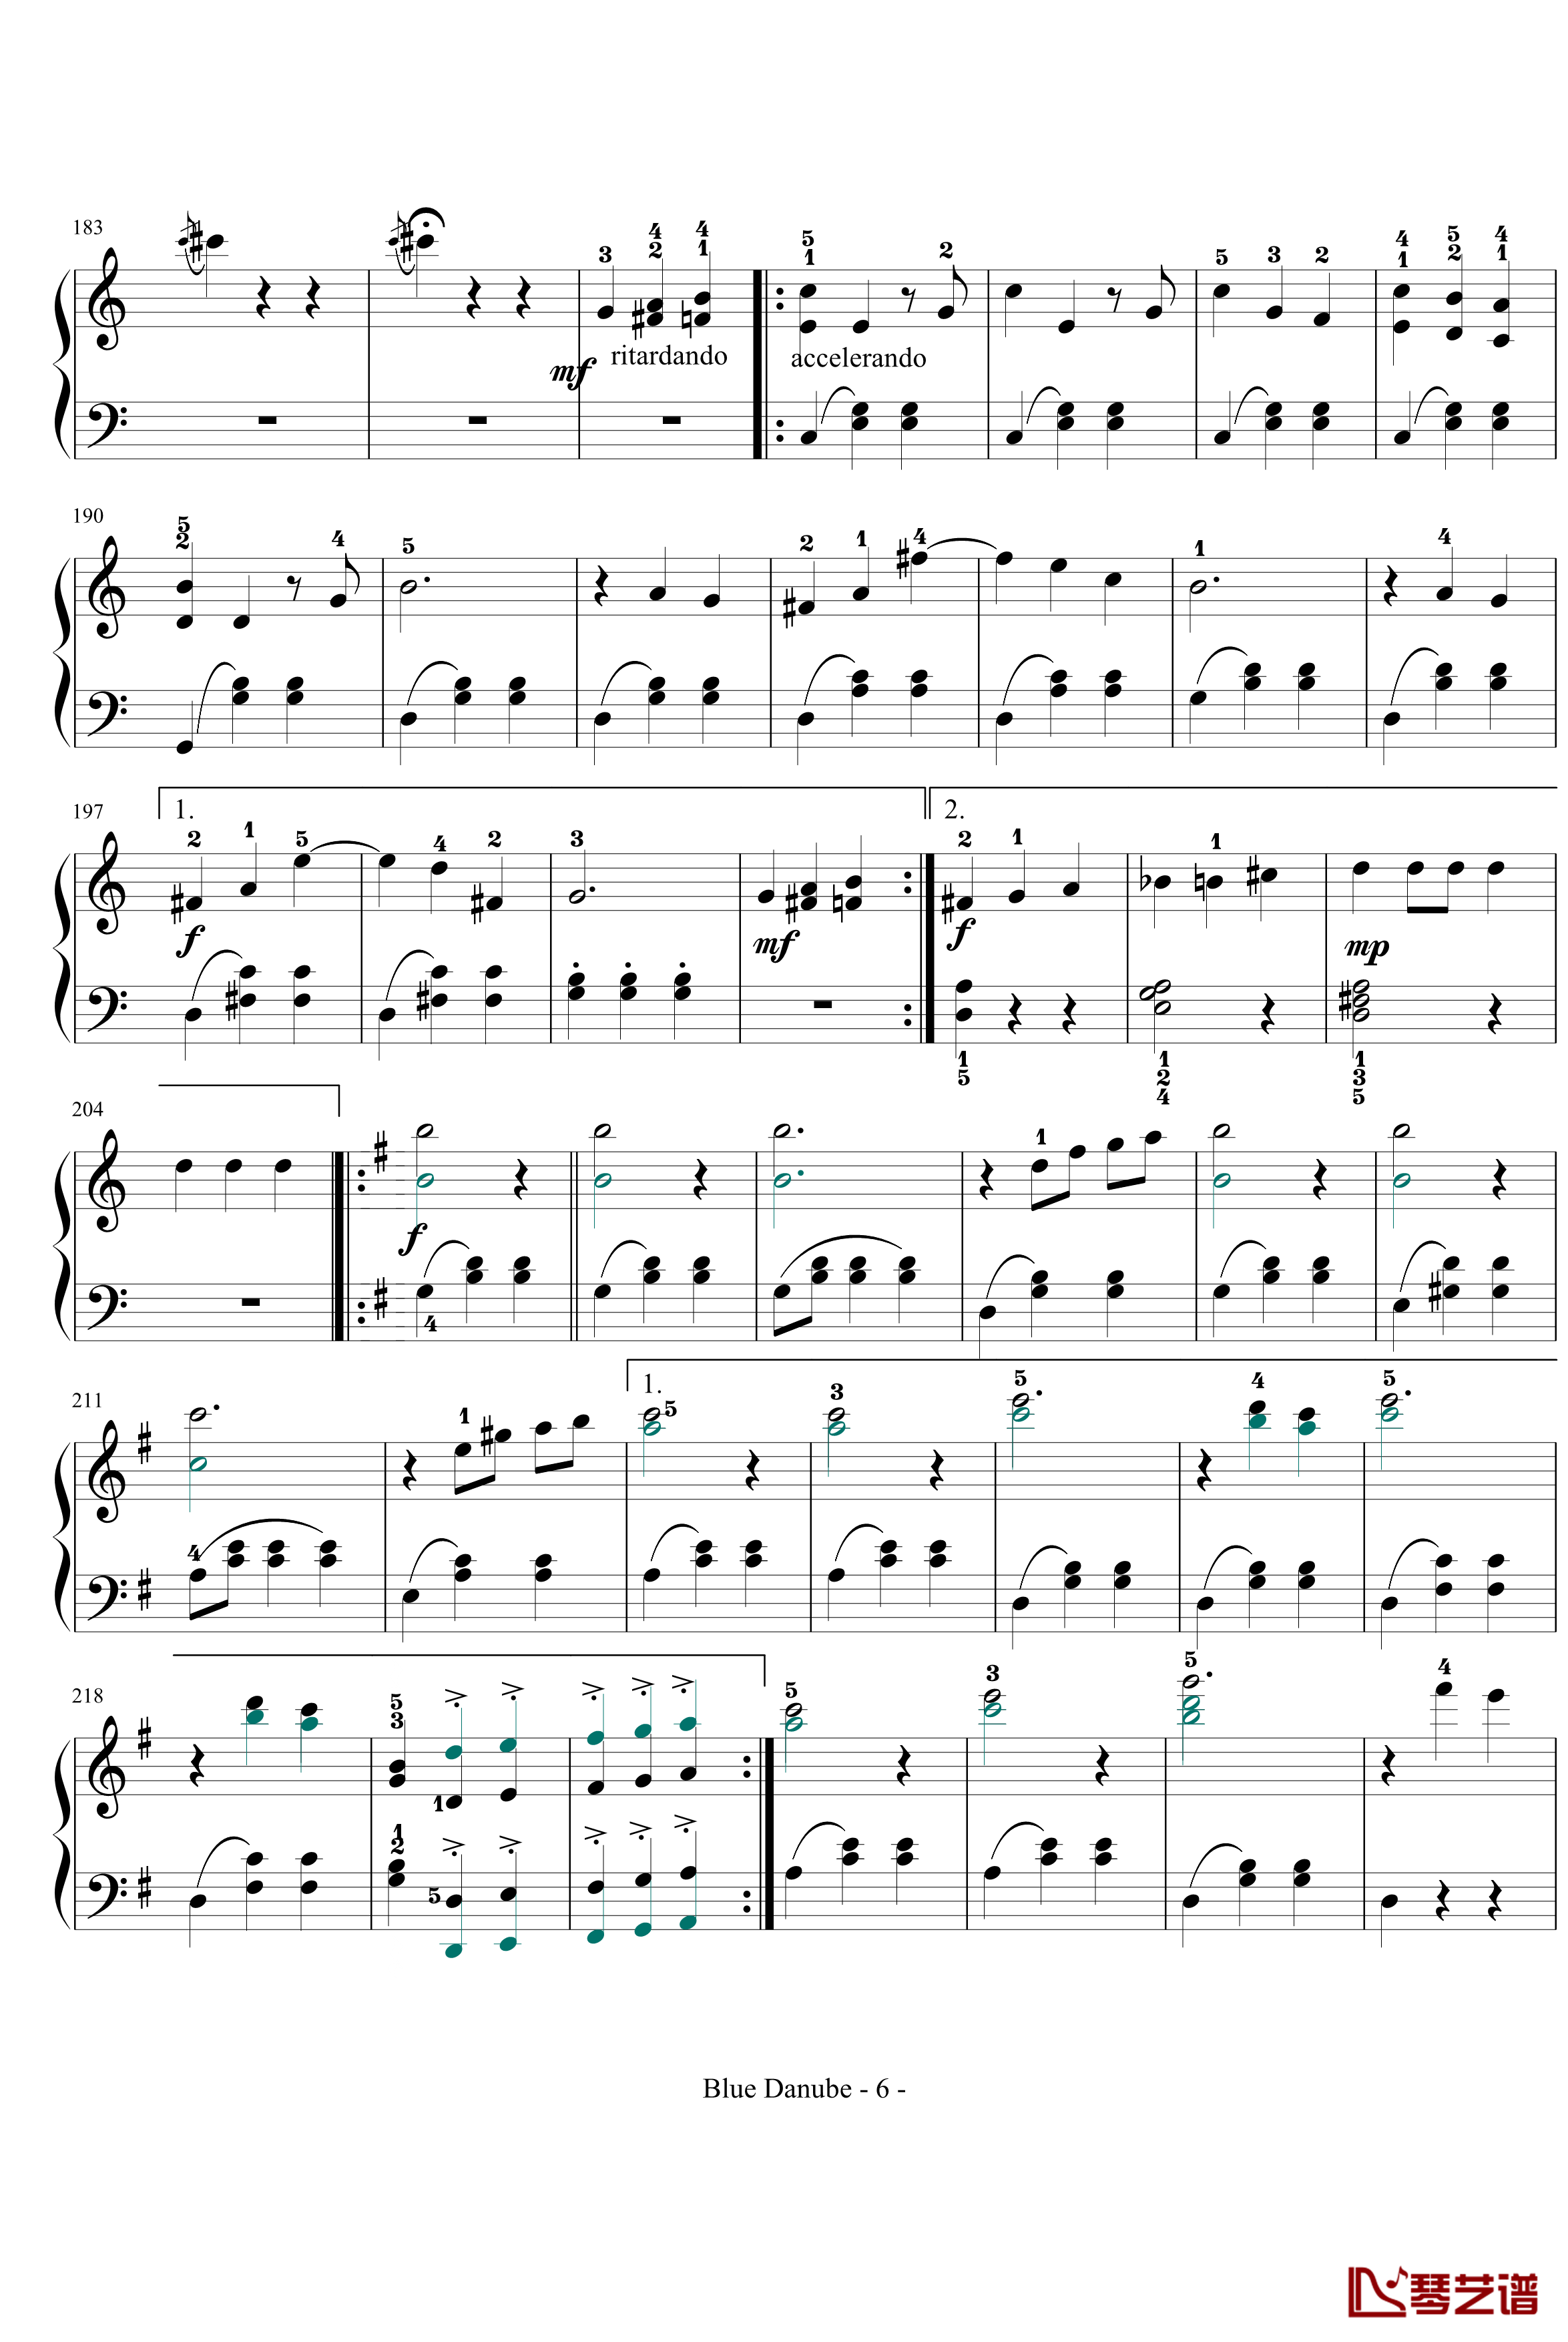 蓝色多瑙河钢琴谱-完整-带指法简化-约翰·斯特劳斯6